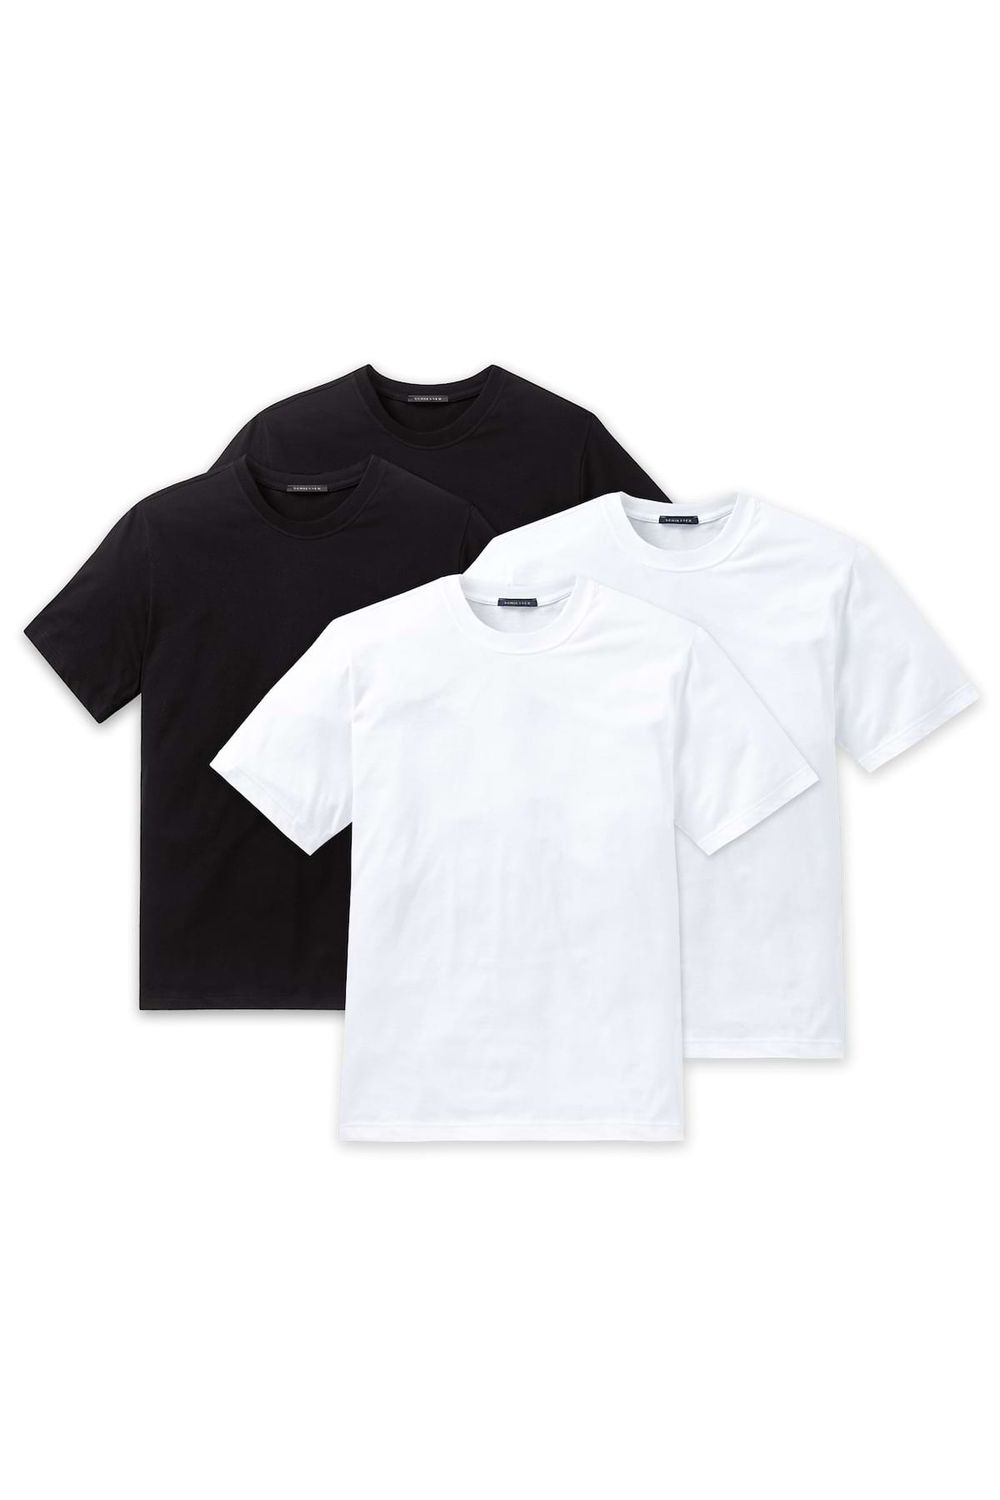 Schiesser Herren Unterhemd, Arm, 1/2 4er Pack - - Trendyol T-Shirt Rundhals American